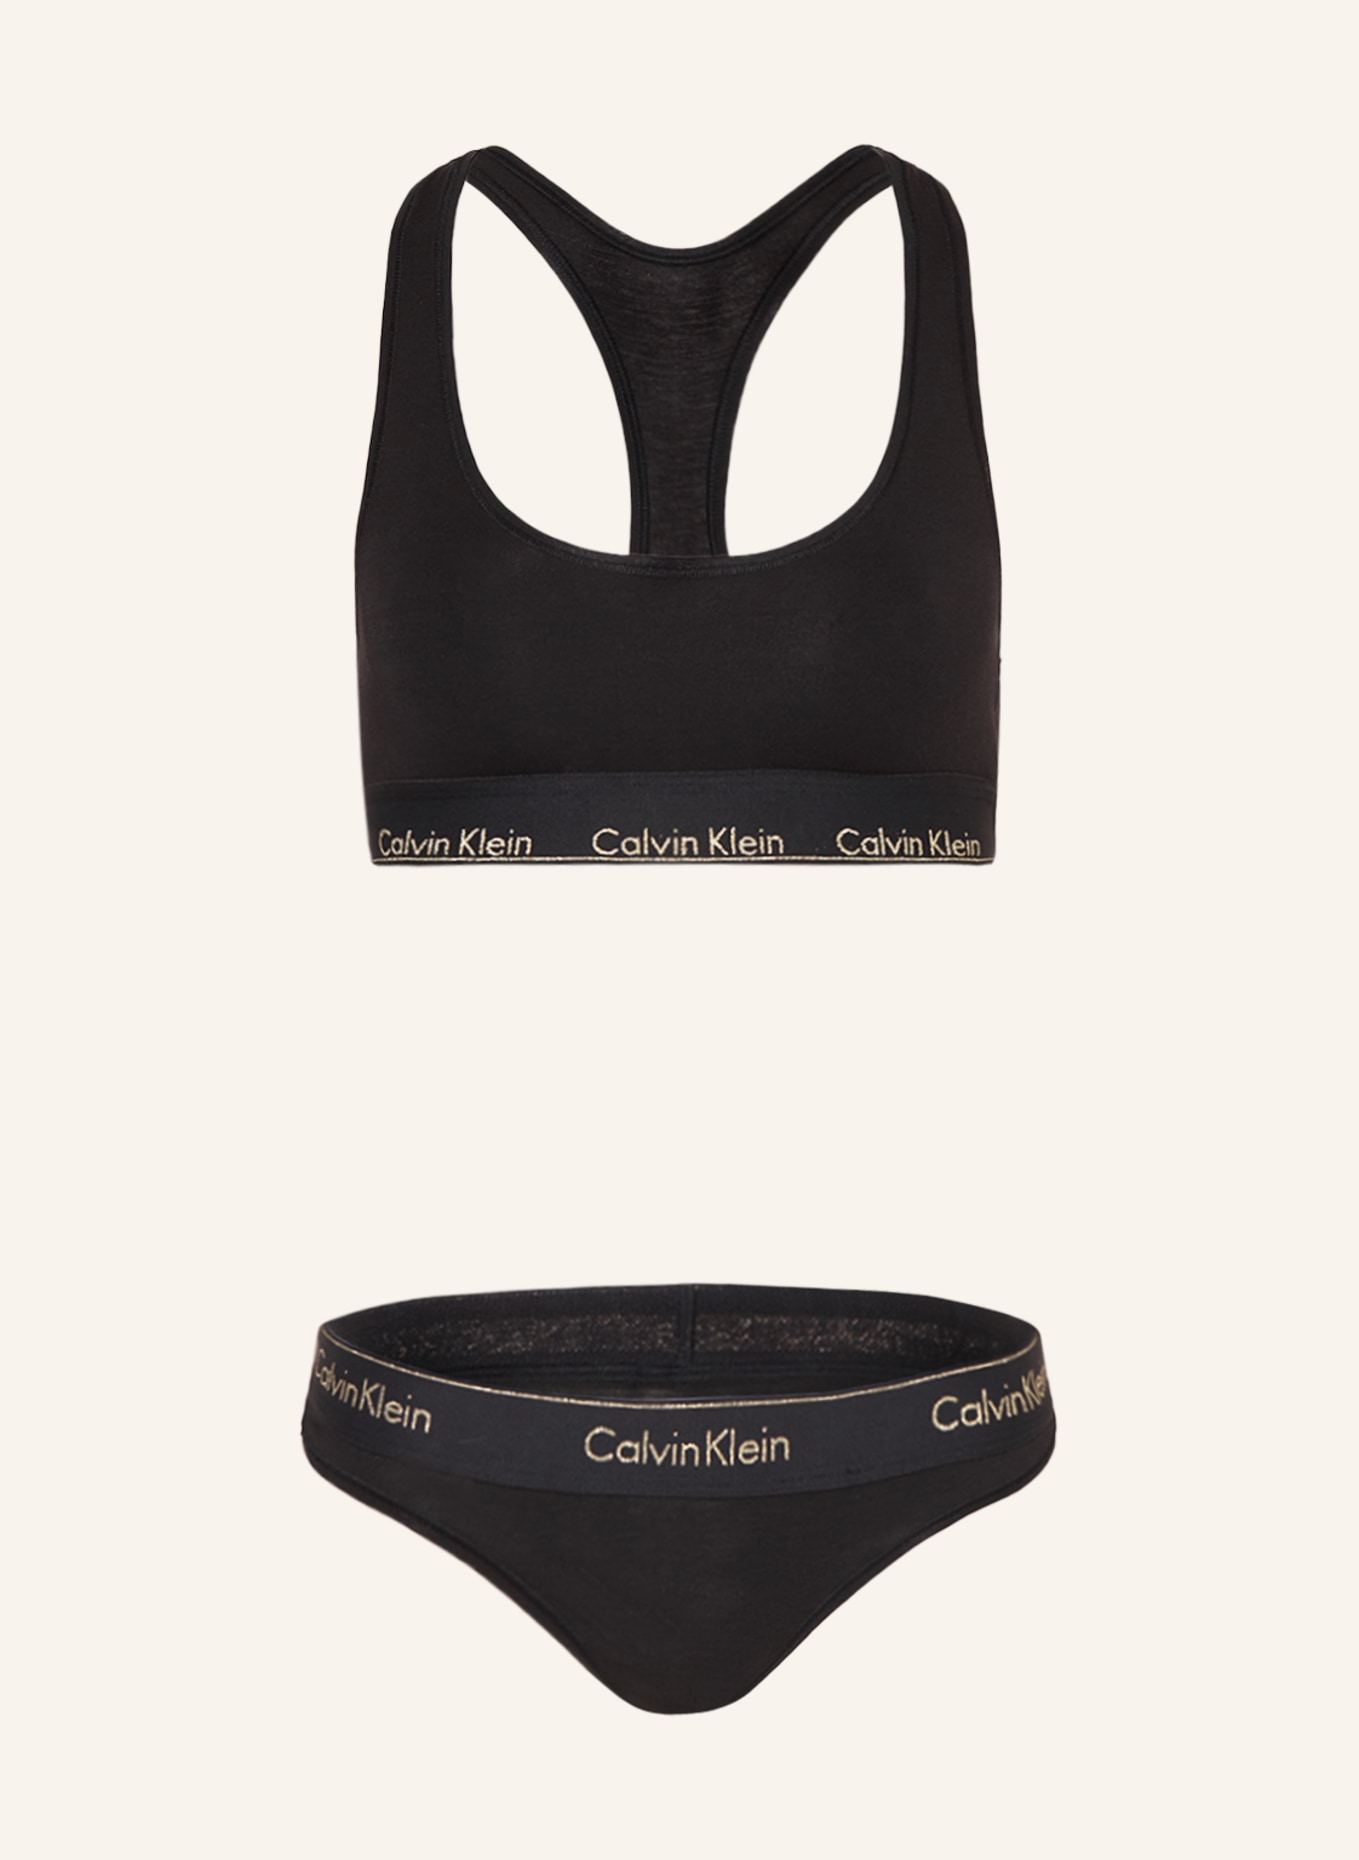 Calvin Klein Women's Cotton Bralette and Thongs Underwear Set in